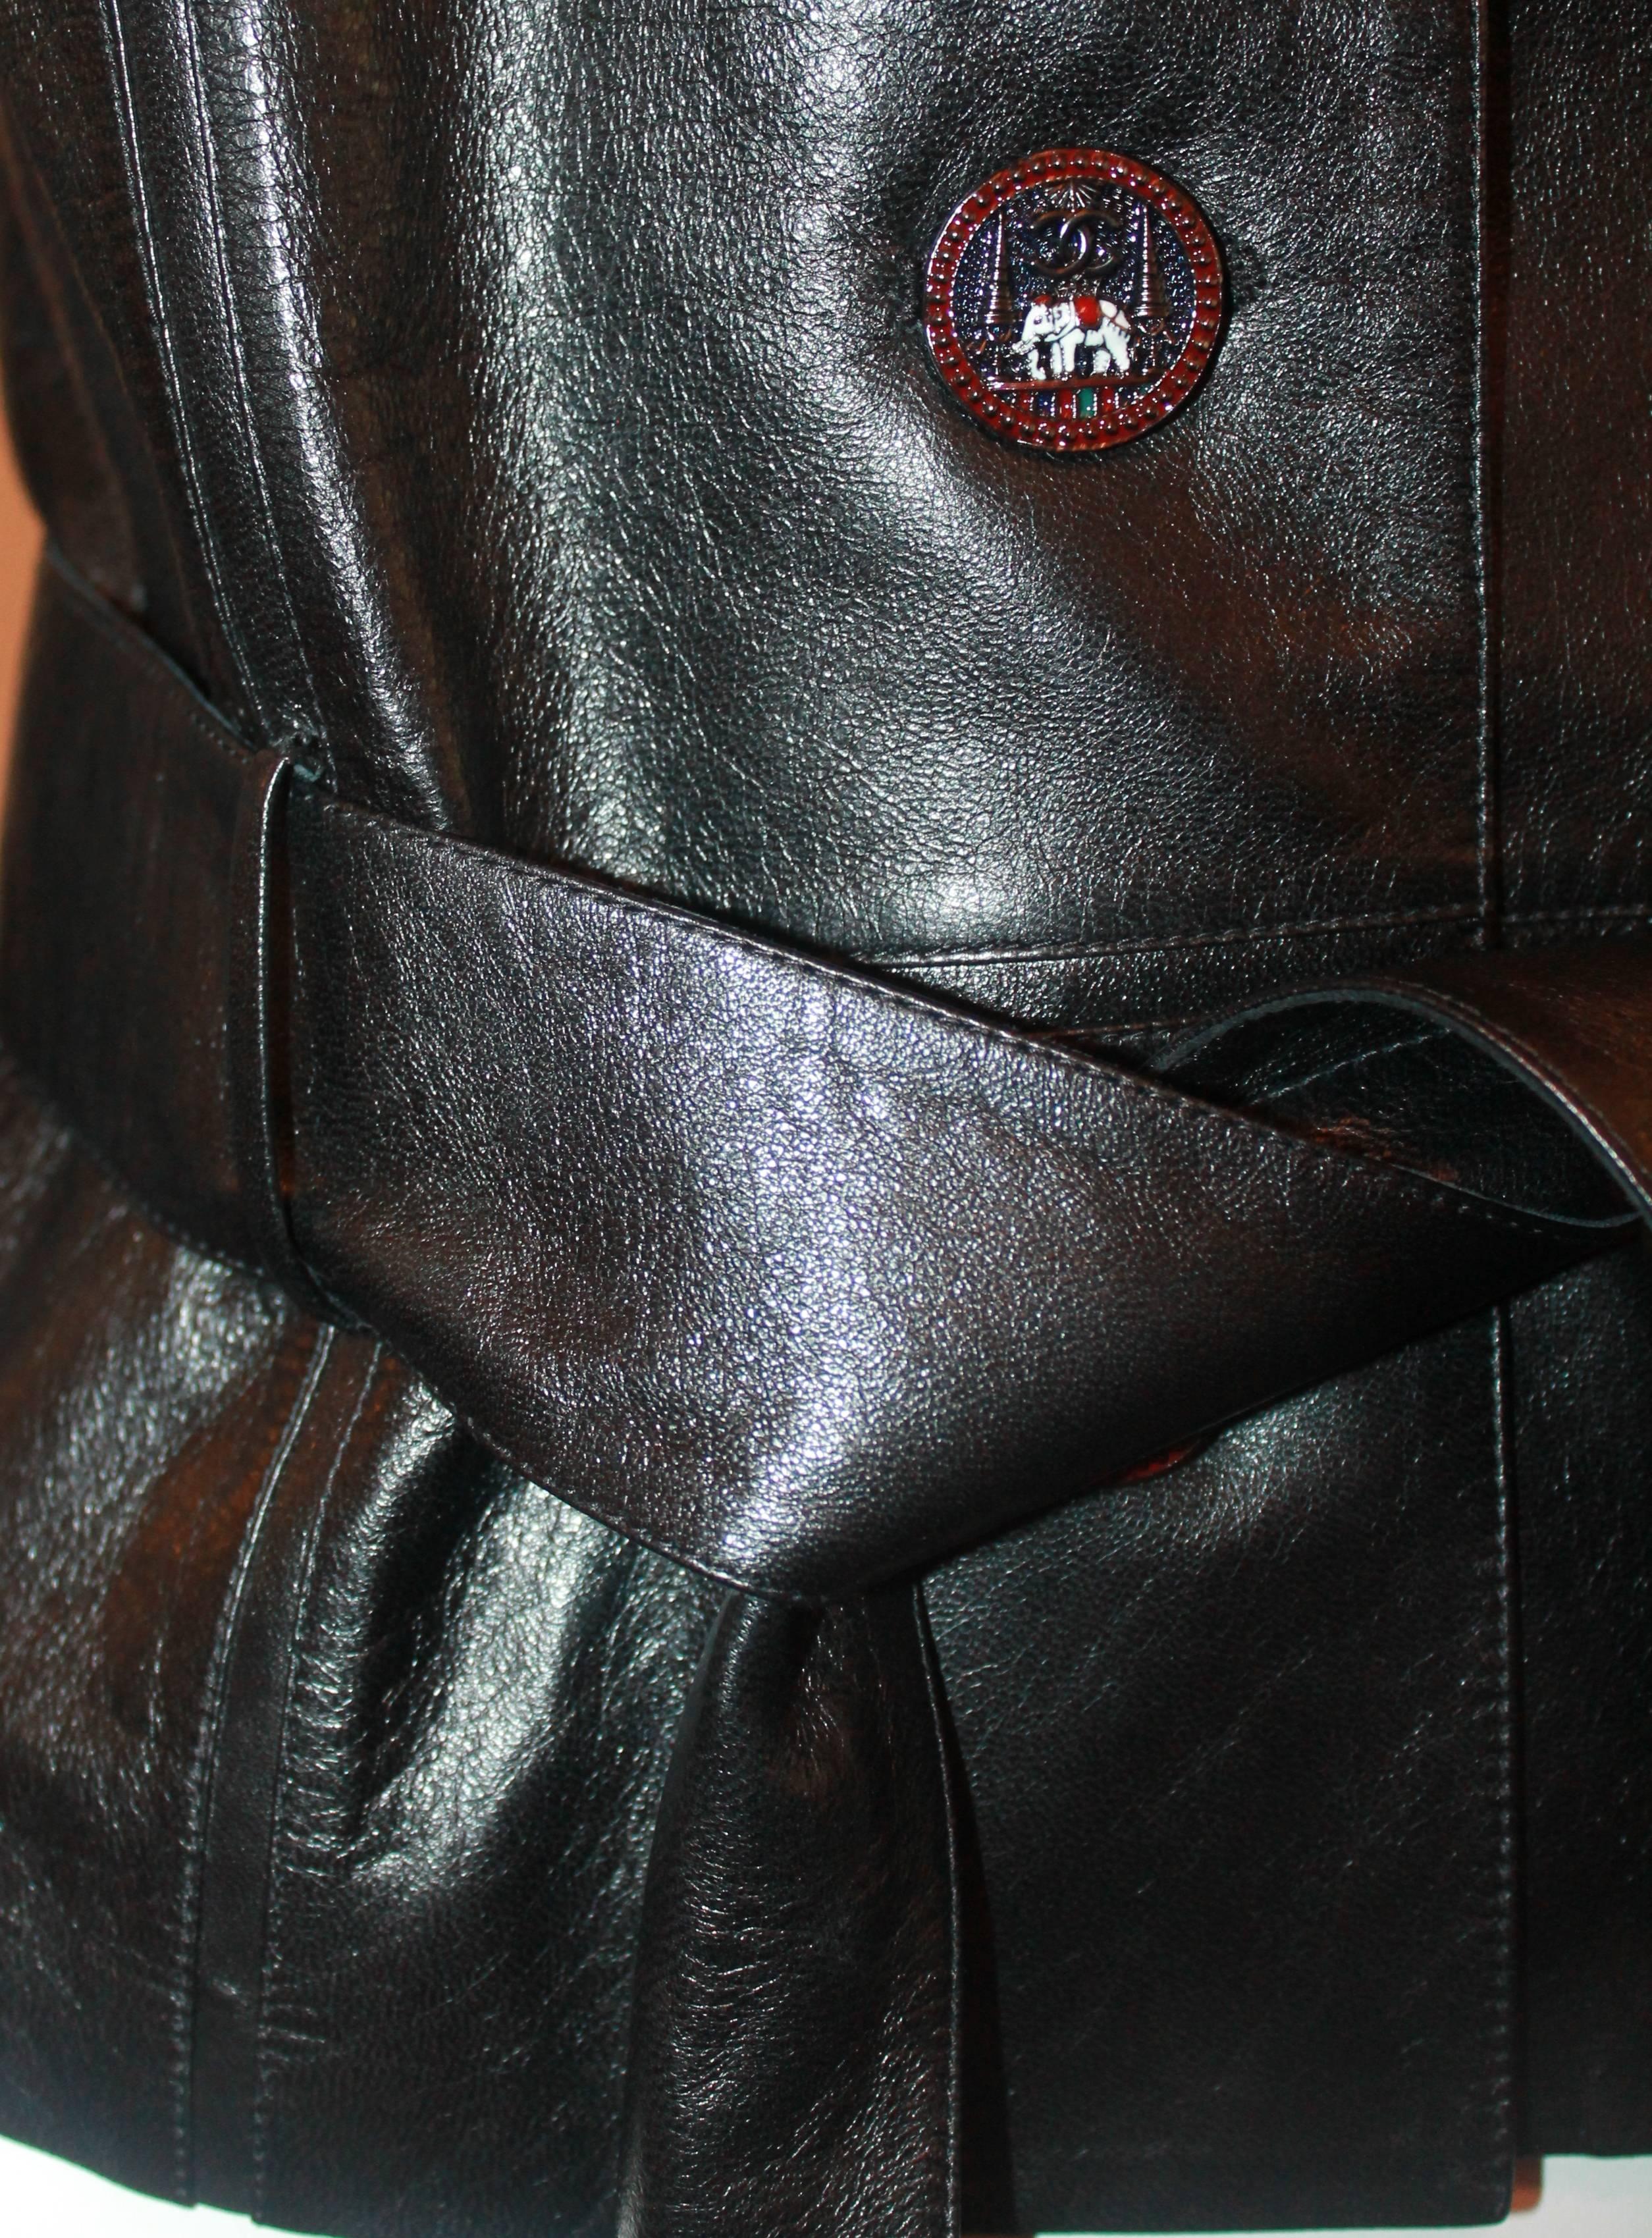 Chanel Black Leather Jacket w/ belt 